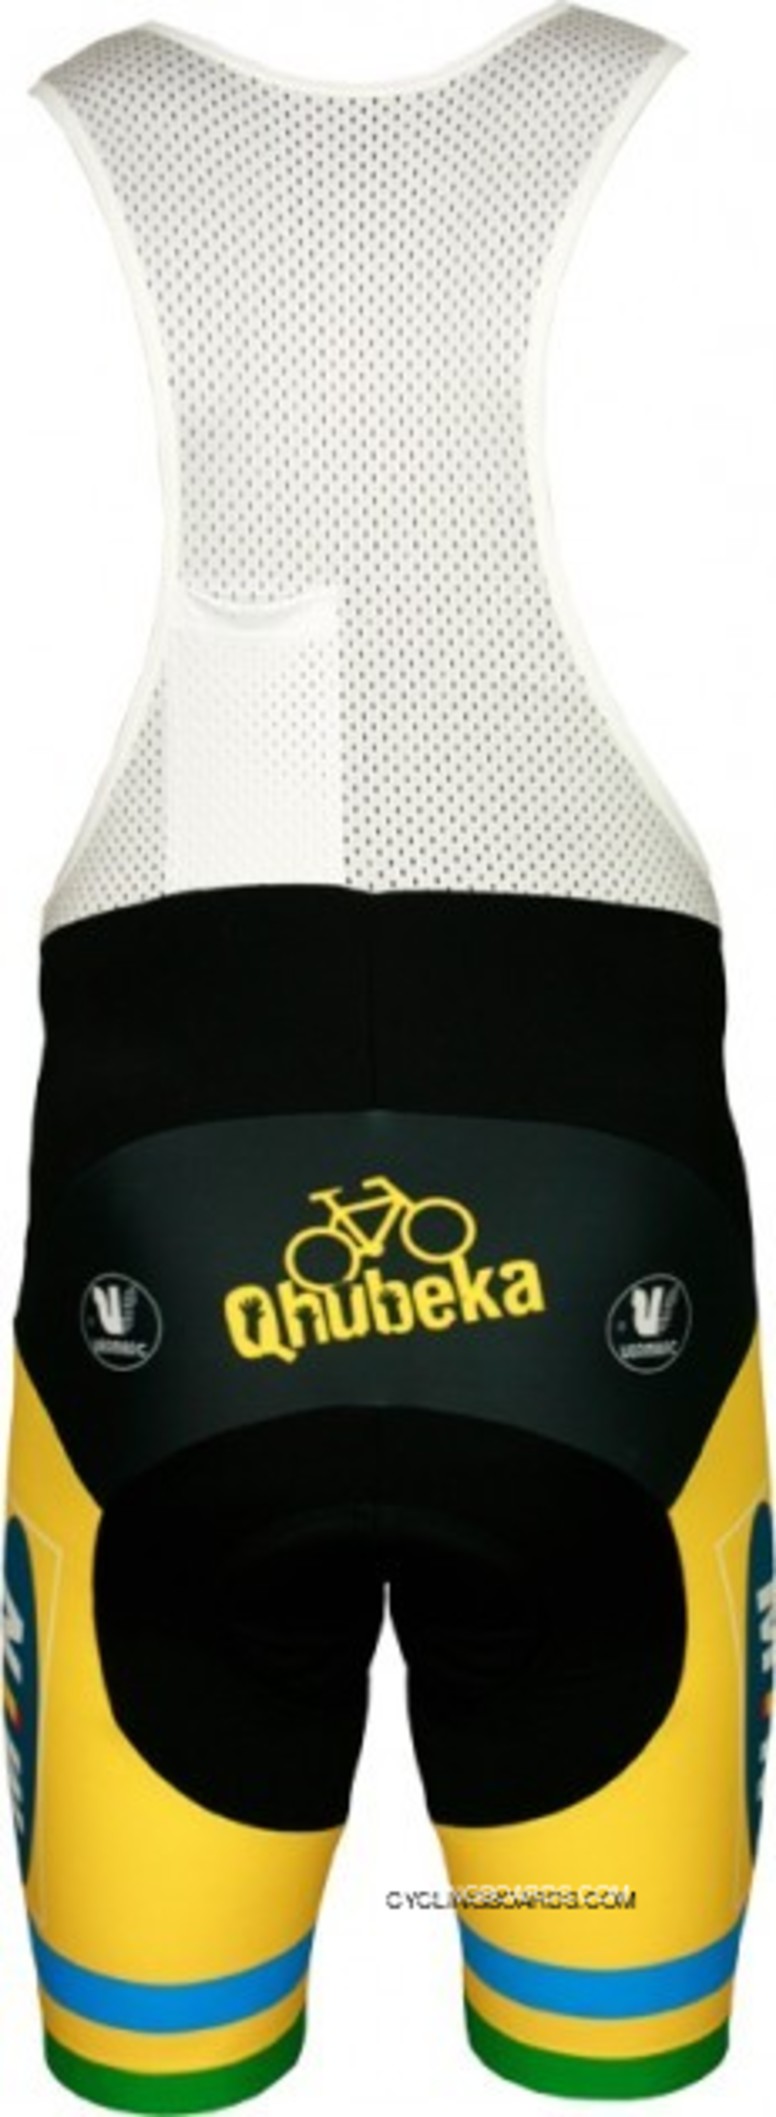 Top Deals MTN QHUBEKA Namibischer Meister 2011-12 Vermarc Radsport-Profi-Team - Bib Shorts TJ-345-0682